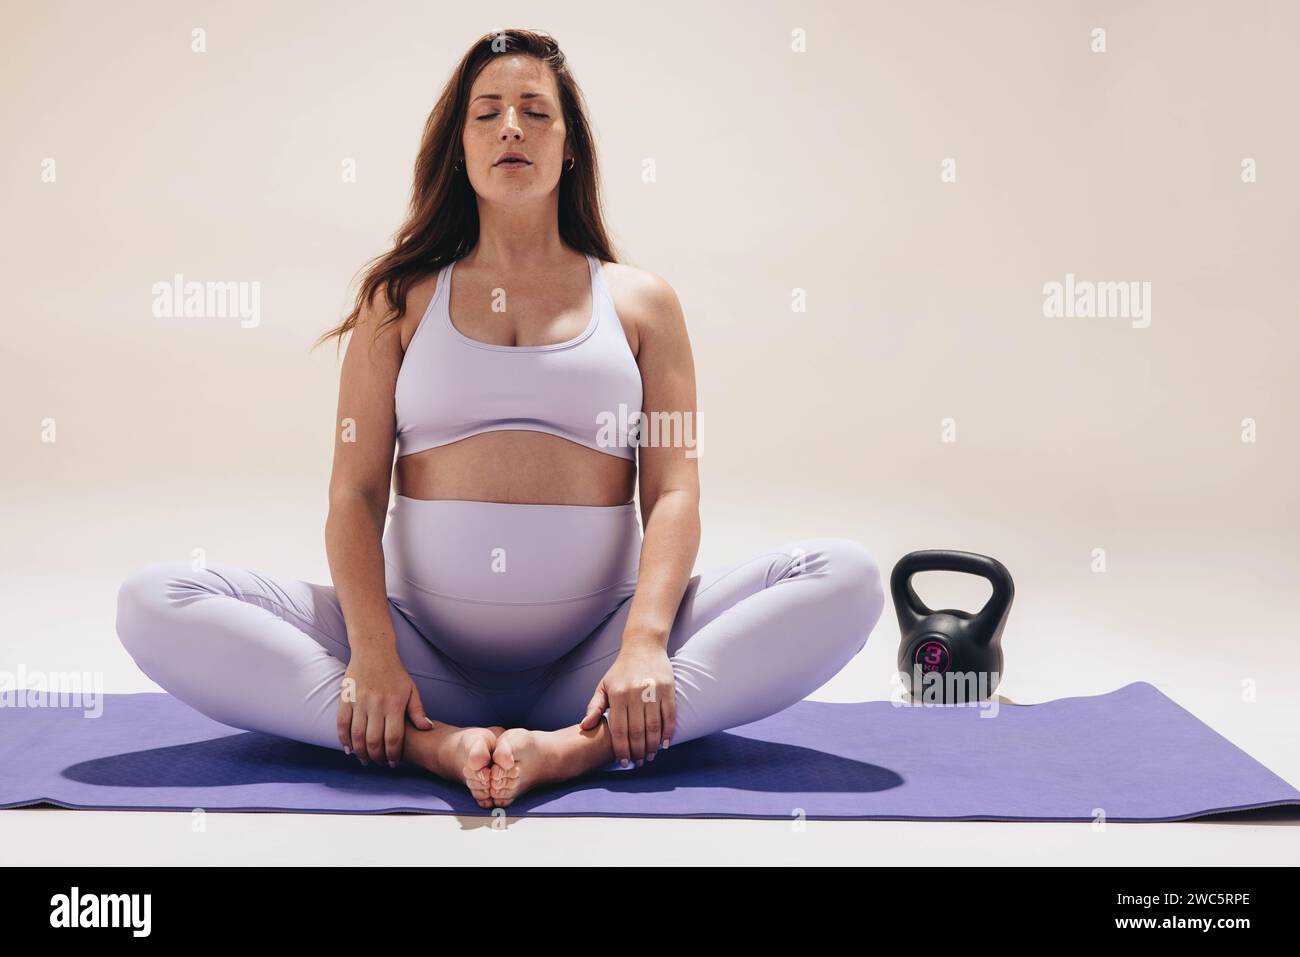 Una donna serena e incinta pratica yoga in uno studio. Si siede su un tappetino per esercizi, con il suo piccolo batto visibile, in posa a farfalla. Concentrata sul suo respiro Foto Stock